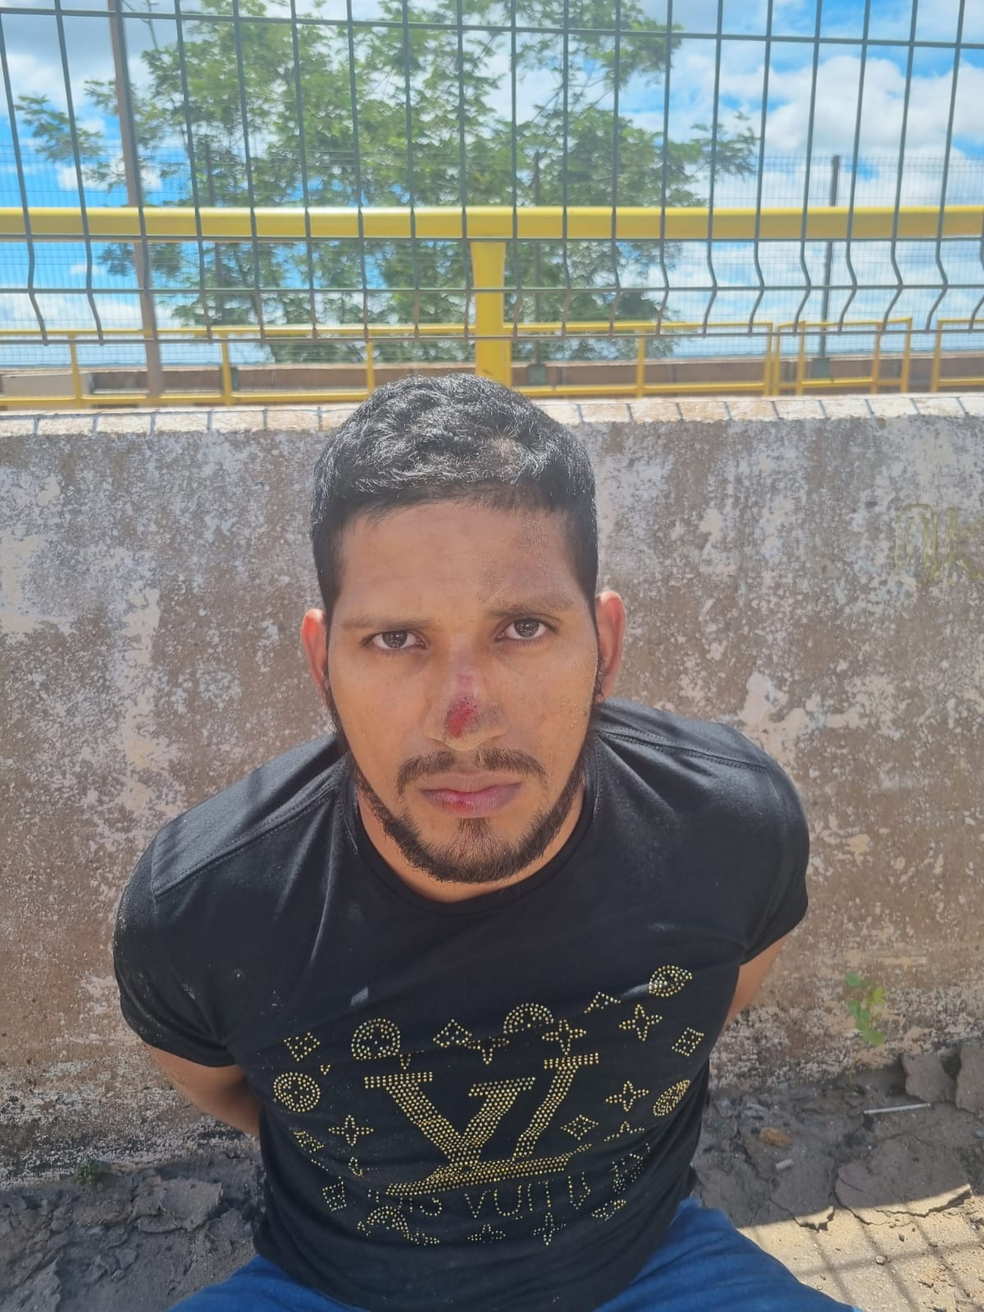 Rogério Mendonça, fugitivo do presídio de Mossoró, em foto após recaptura — Foto: PF/Divulgação